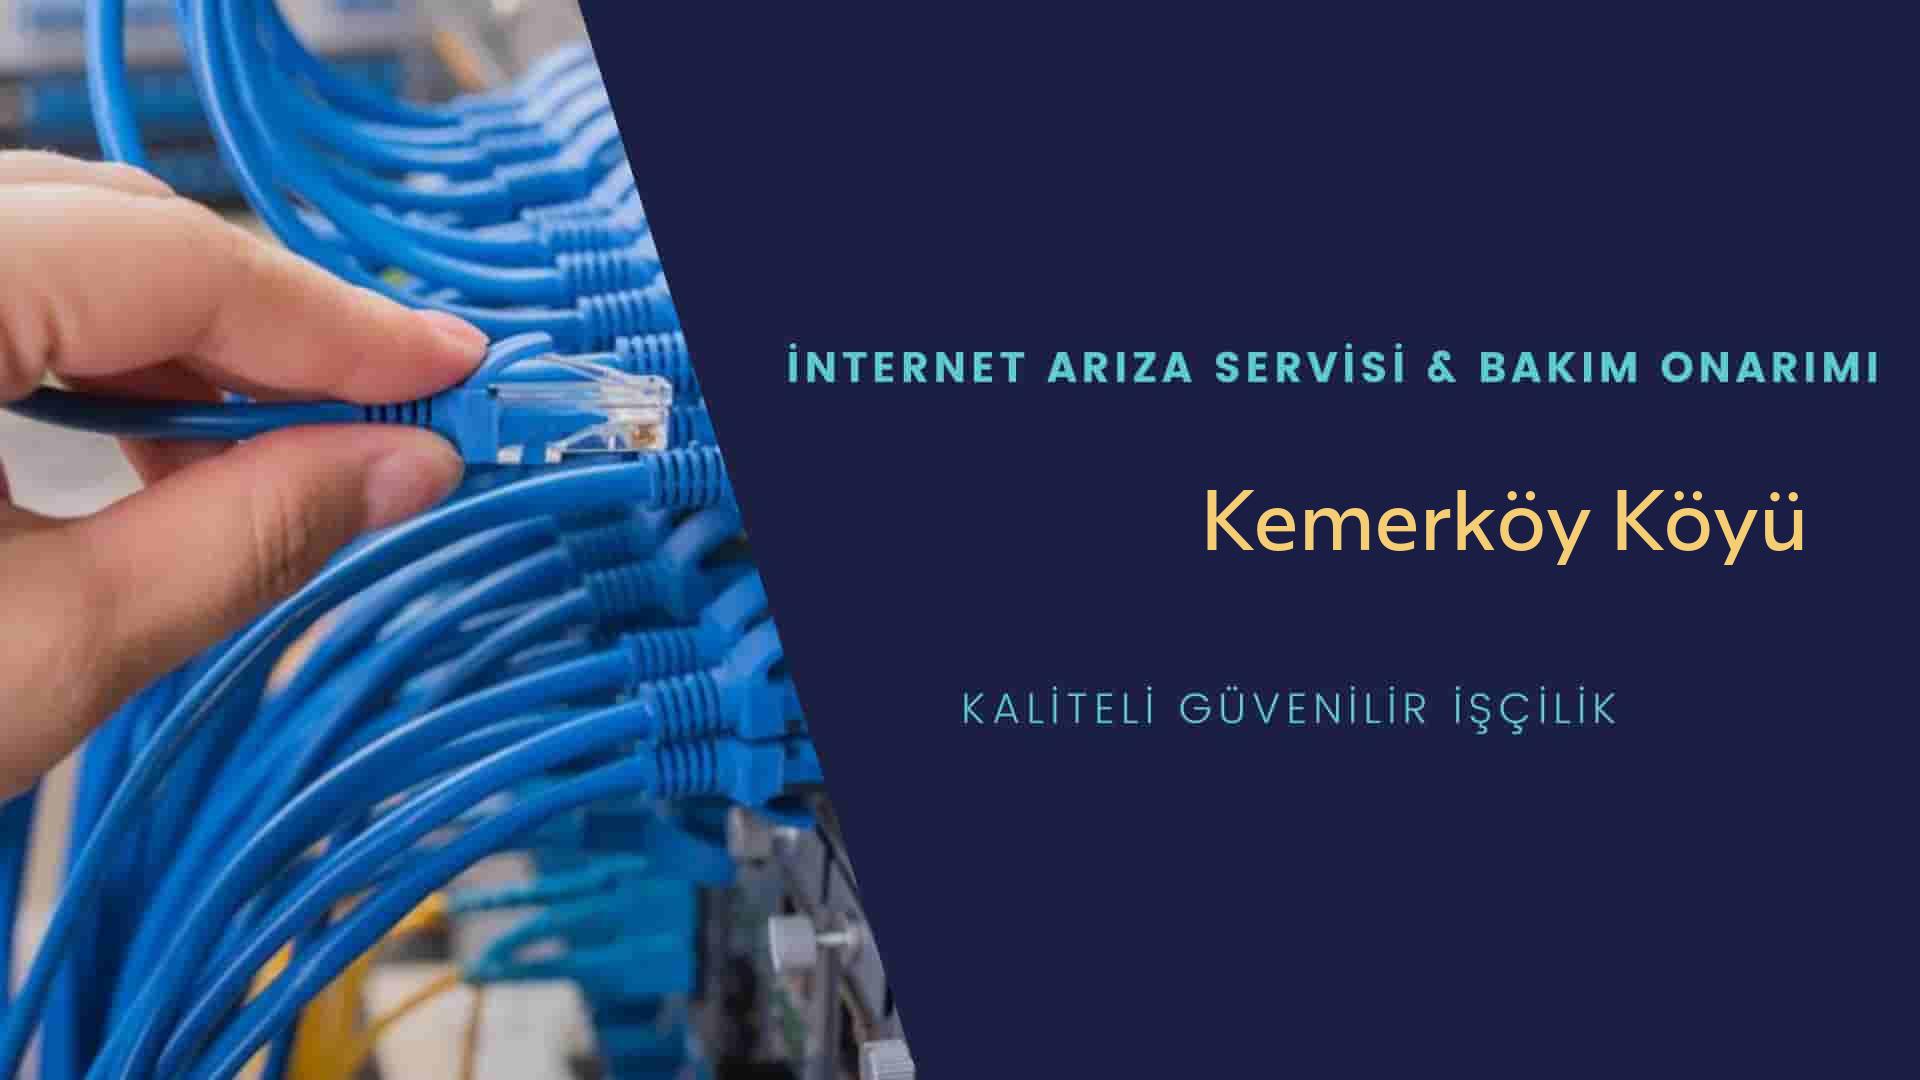 Kemerköy Köyü internet kablosu çekimi yapan yerler veya elektrikçiler mi? arıyorsunuz doğru yerdesiniz o zaman sizlere 7/24 yardımcı olacak profesyonel ustalarımız bir telefon kadar yakındır size.